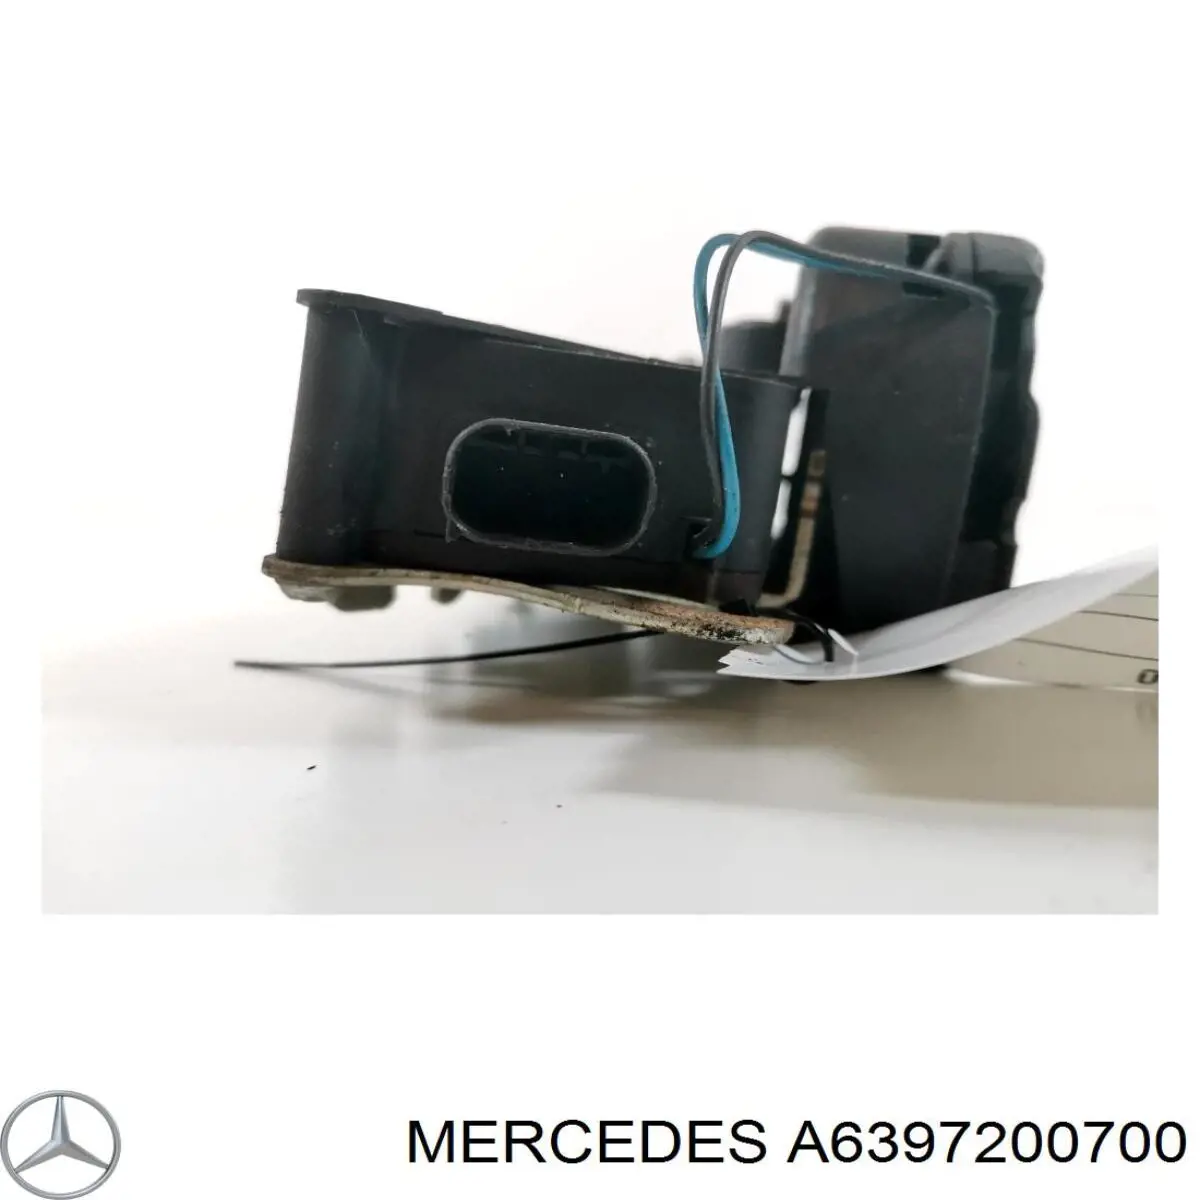 6397200700 Mercedes cerradura de puerta delantera izquierda